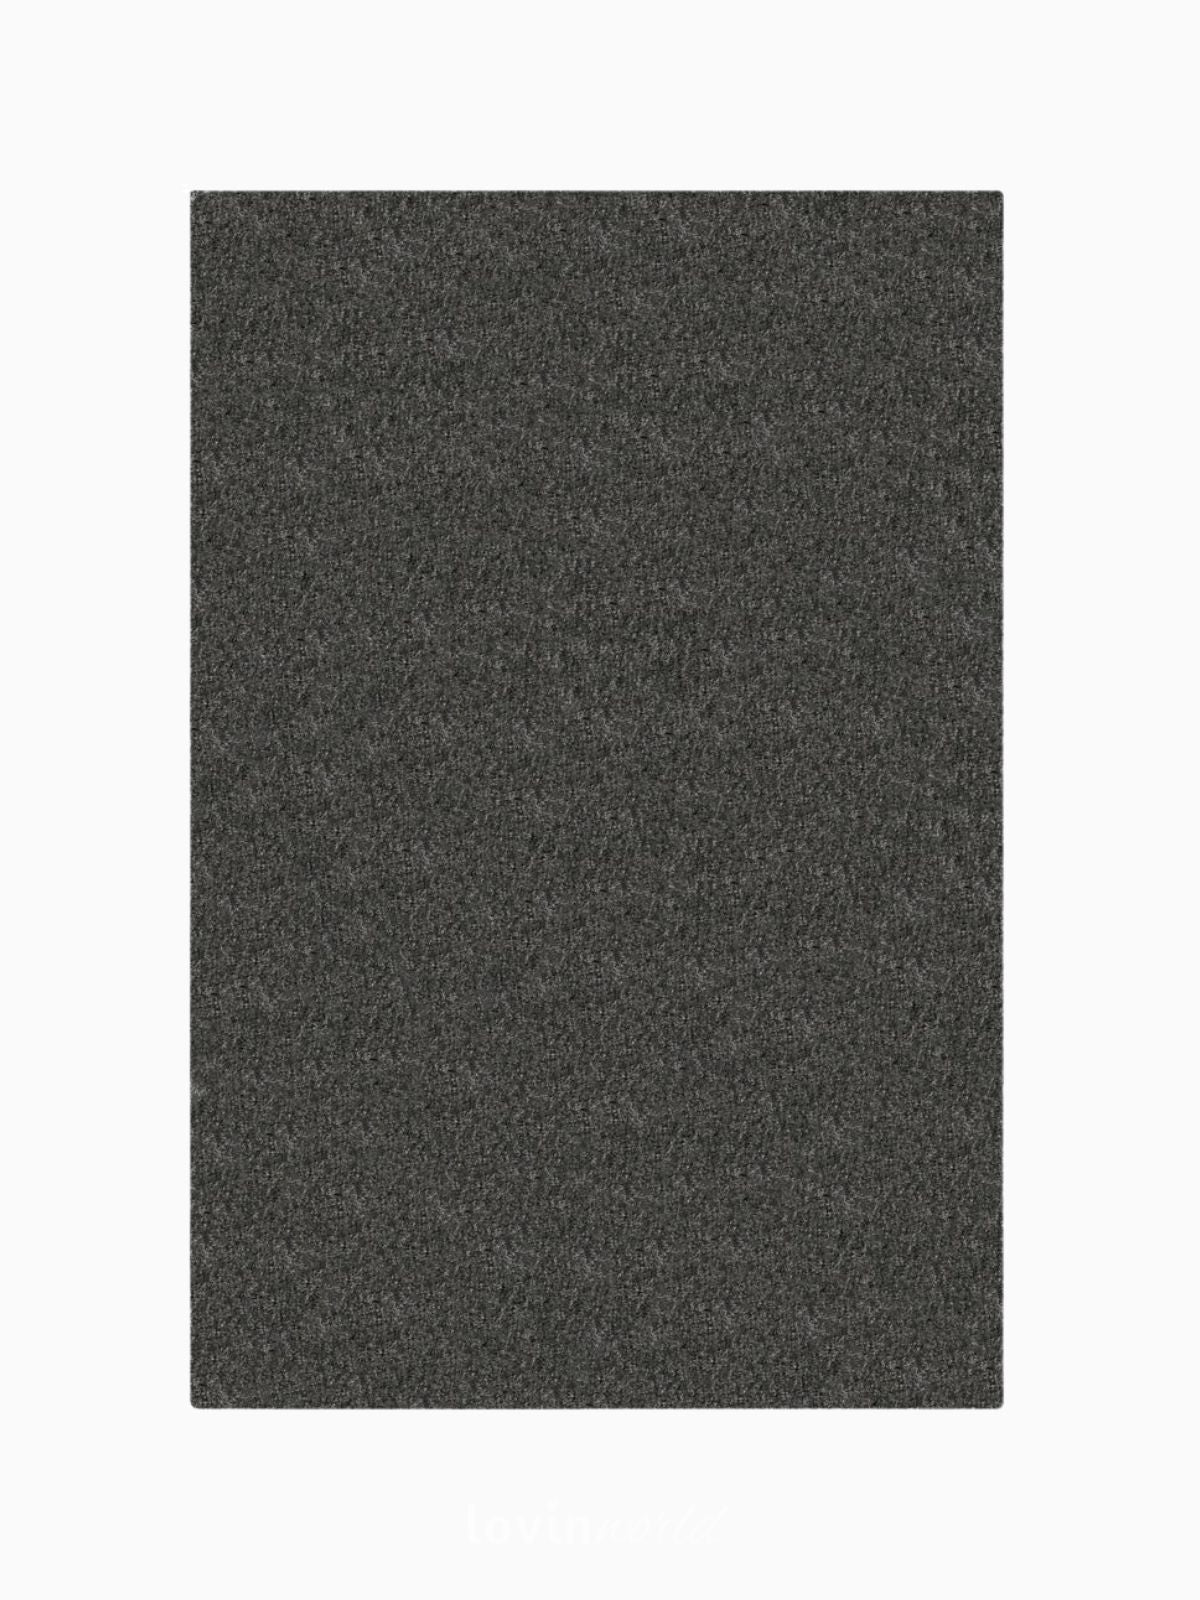 Tappeto shaggy Velvet in poliestere, colore grigio-1